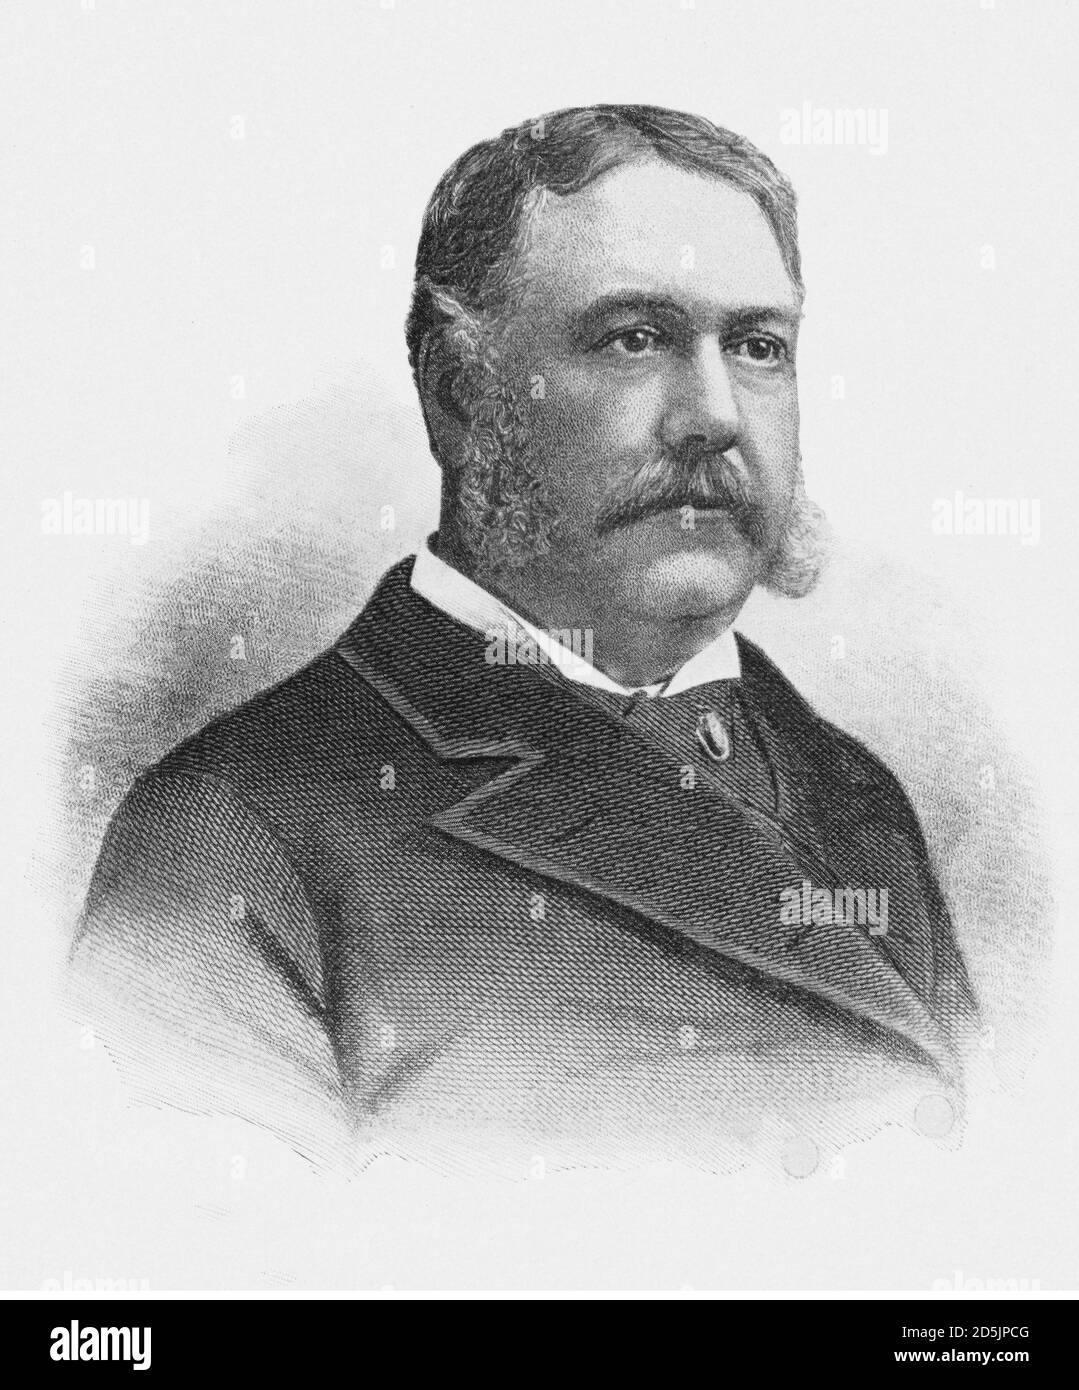 Porträt von Präsident Chester Alan Arthur. Chester Alan Arthur (1829 – 1886) war ein amerikanischer Rechtsanwalt und Politiker, der als 21. Präsident diente Stockfoto